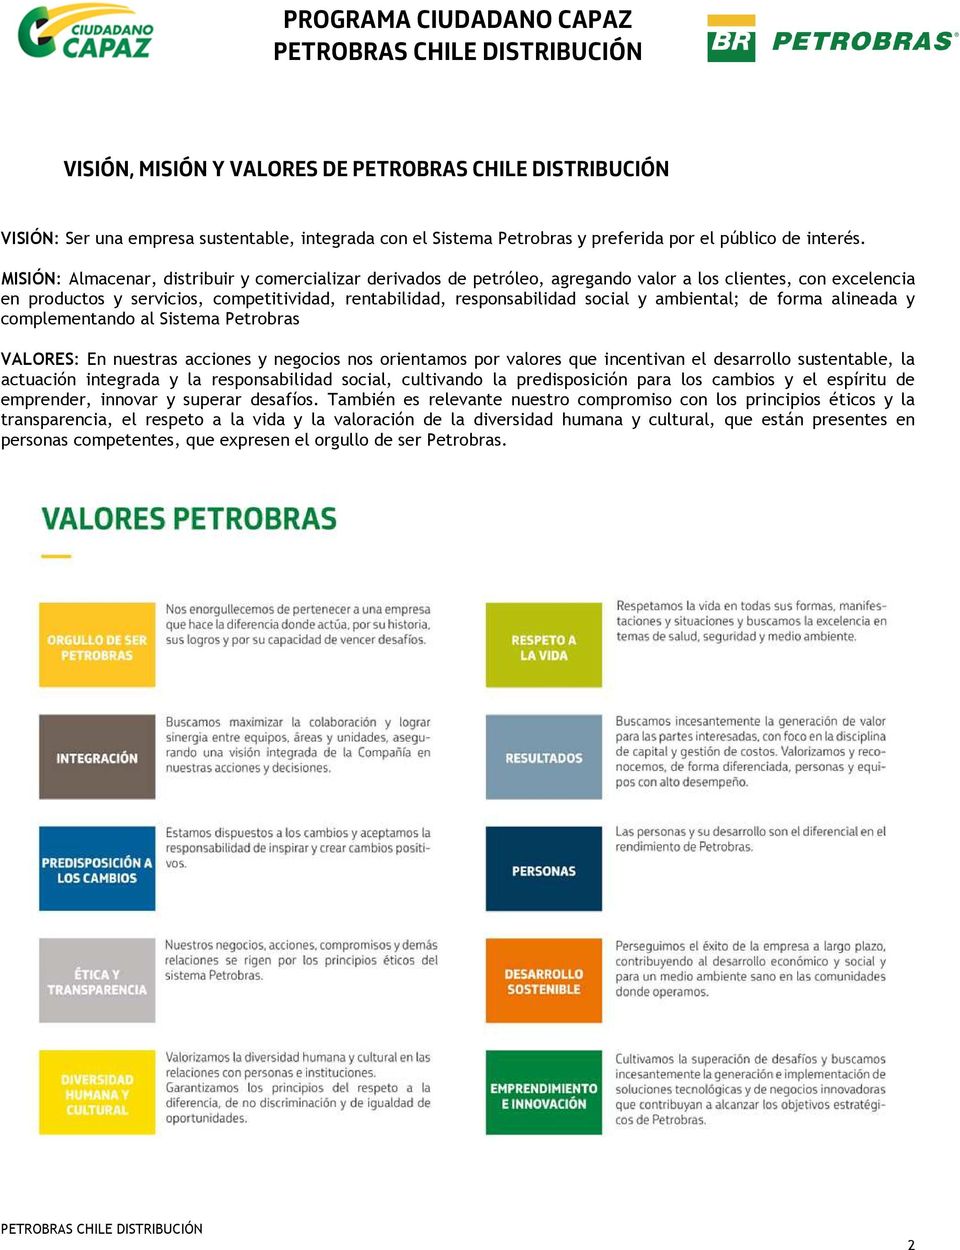 ambiental; de forma alineada y complementando al Sistema Petrobras VALORES: En nuestras acciones y negocios nos orientamos por valores que incentivan el desarrollo sustentable, la actuación integrada